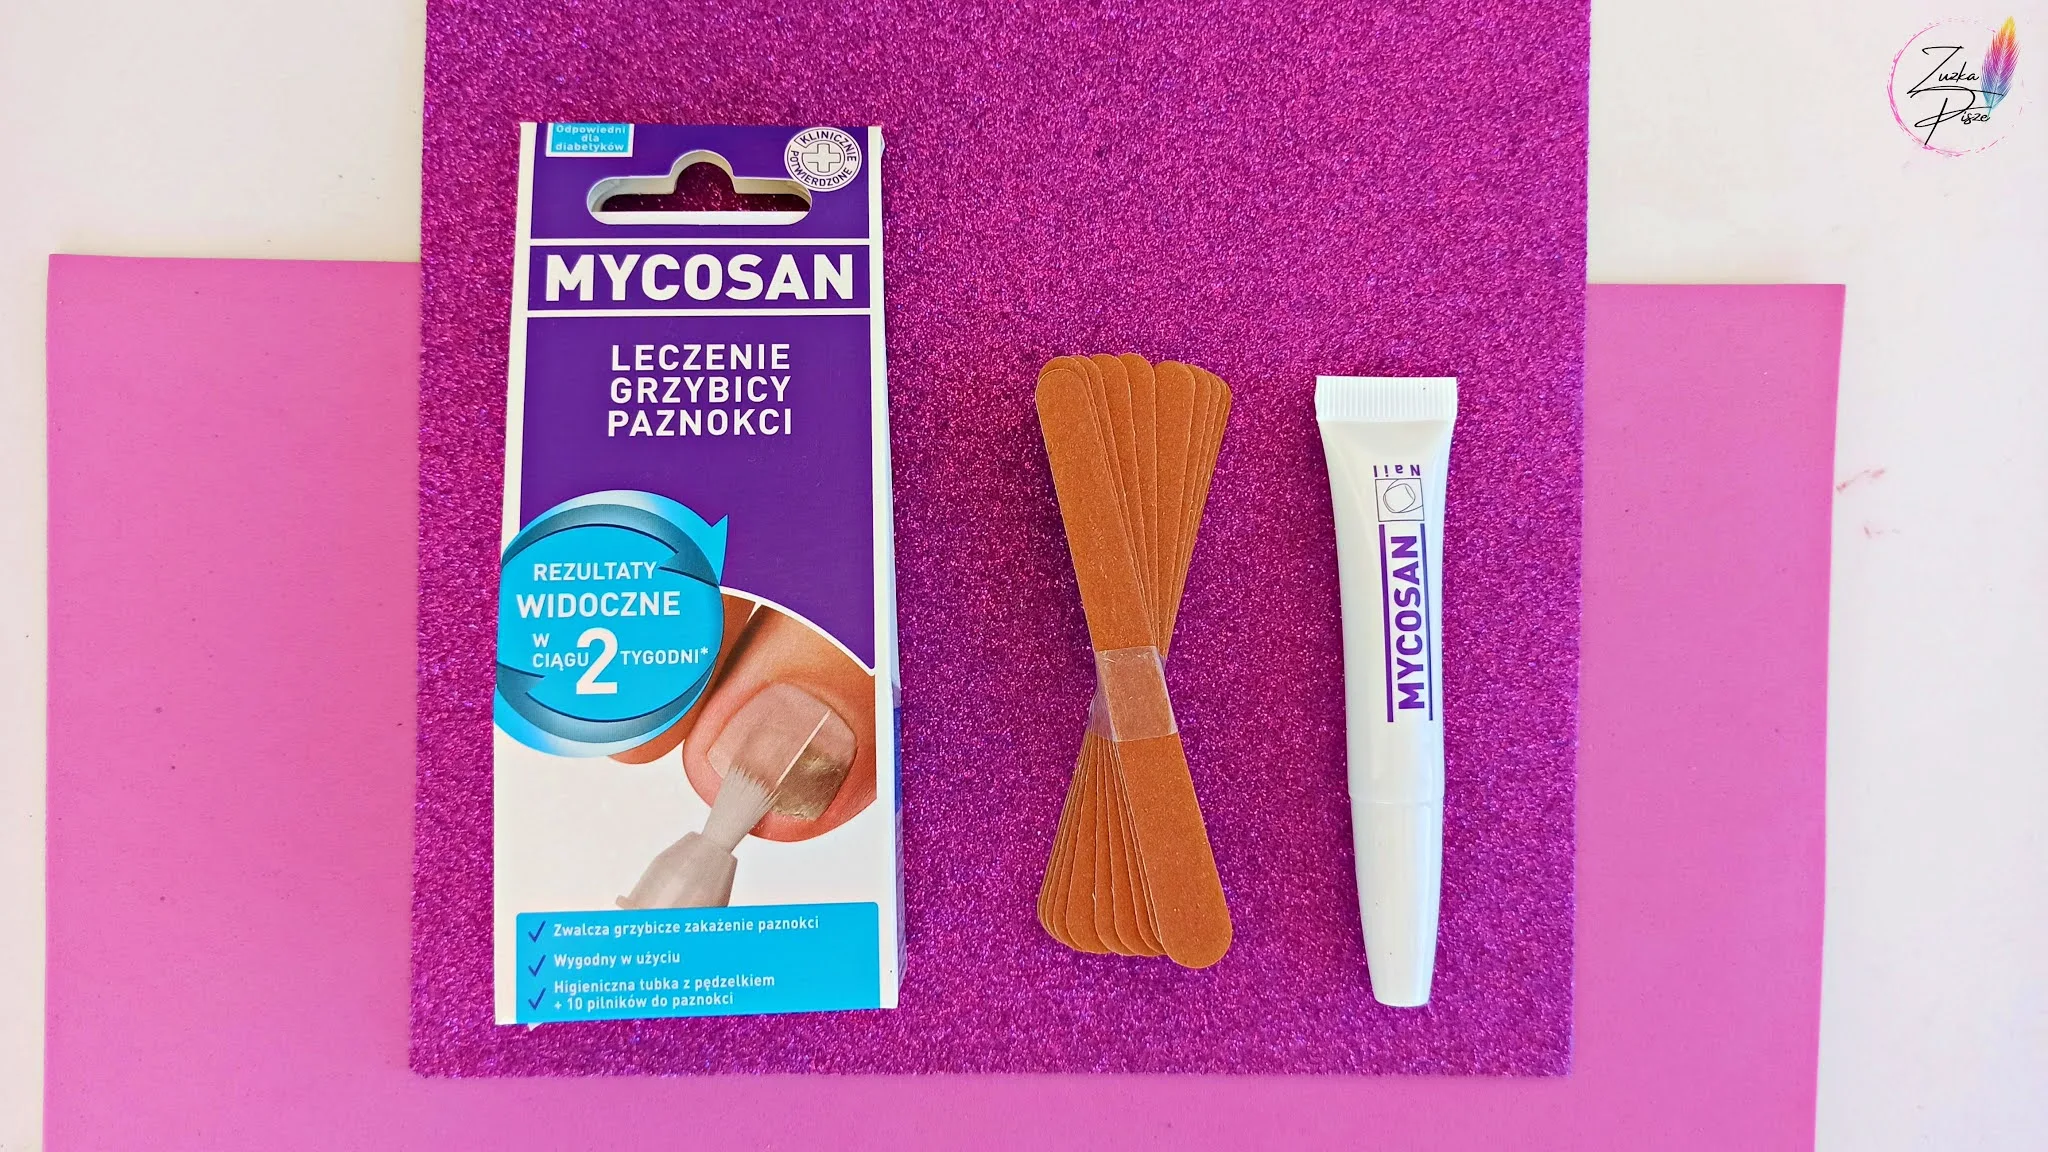 MYCOSAN - skuteczne leczenie grzybicy paznokci